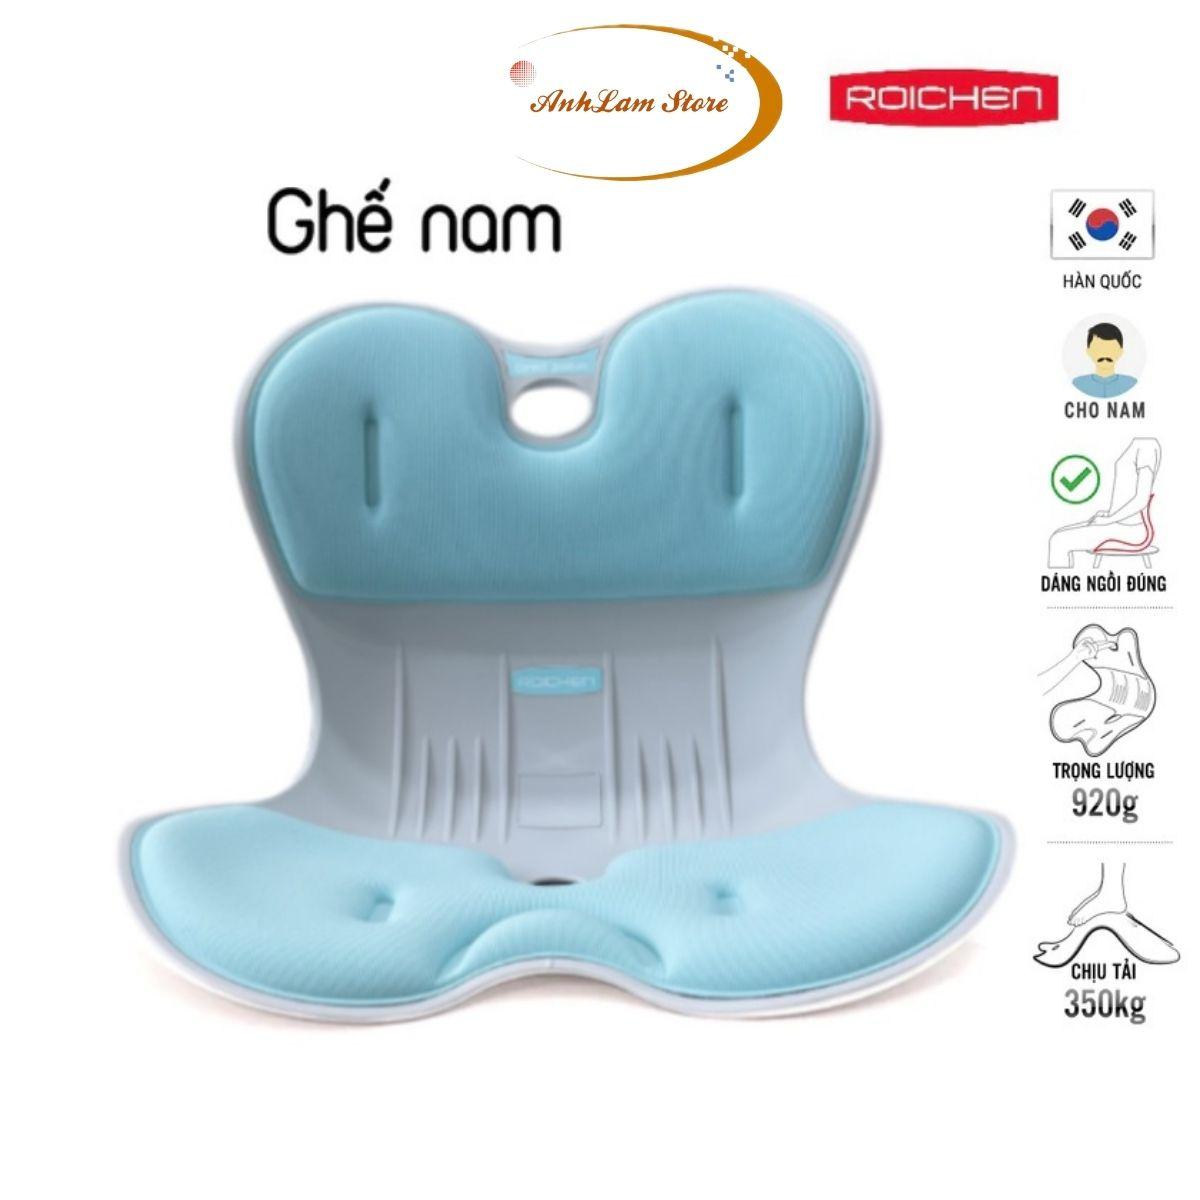 Ghế chỉnh dáng ngồi đúng Roichen - Hàn Quốc (Made in Korea). Dùng cho Nam, Nữ, Trẻ em - Tặng 10 miếng dán đa năng không cần khoan đục trị giá 100K